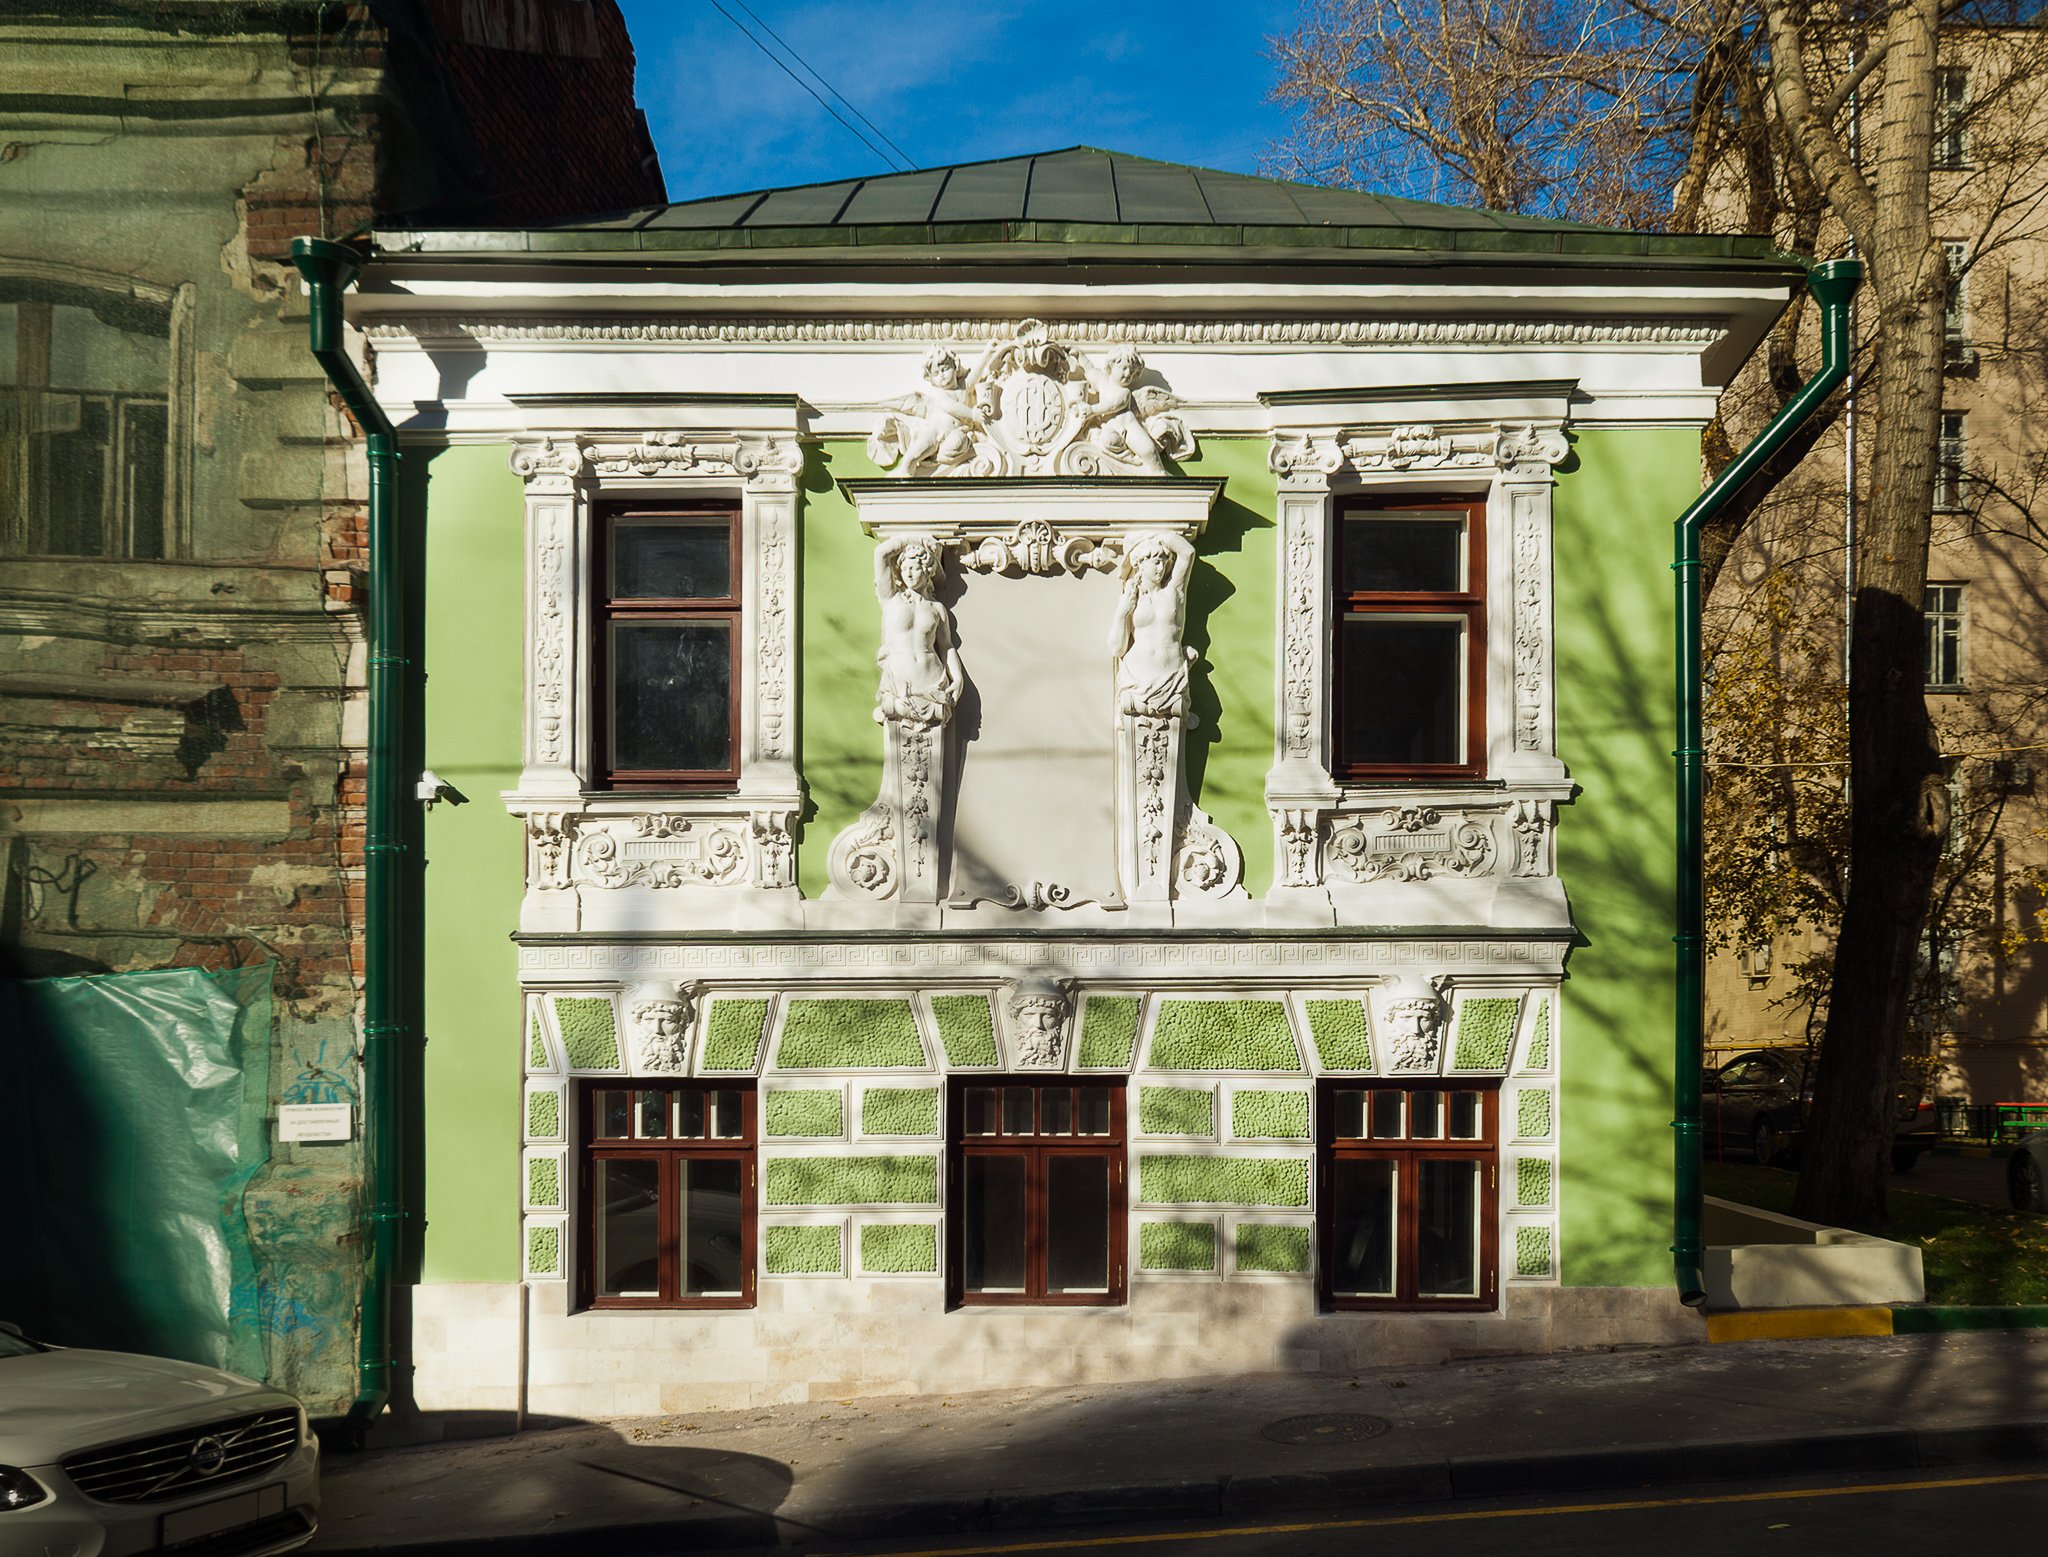 14 октября 2013 года. Дом № 7, строение 1 по Печатникову переулку сразу после реставрации. Фото: Мосгорнаследие